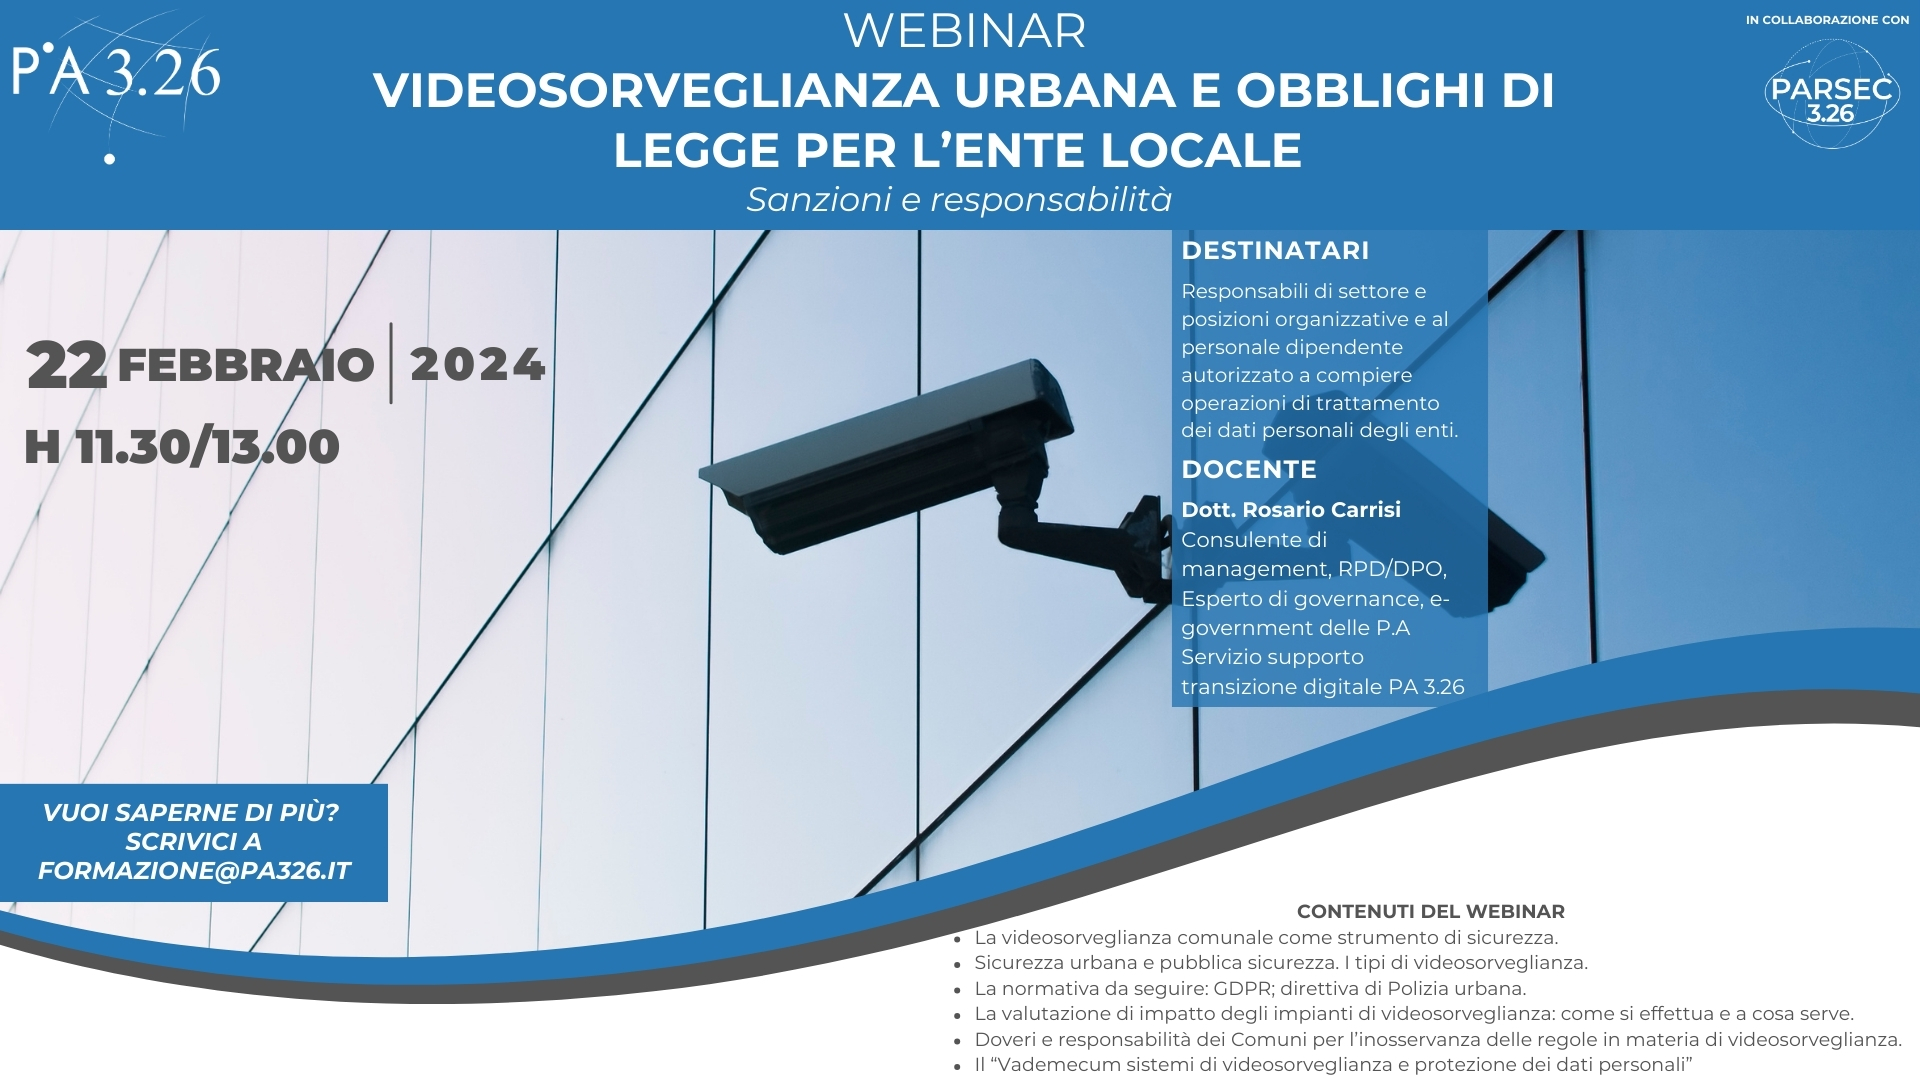 Scheda evento videosorveglianza urbana e obblighi di legge per lEnte Locale 2